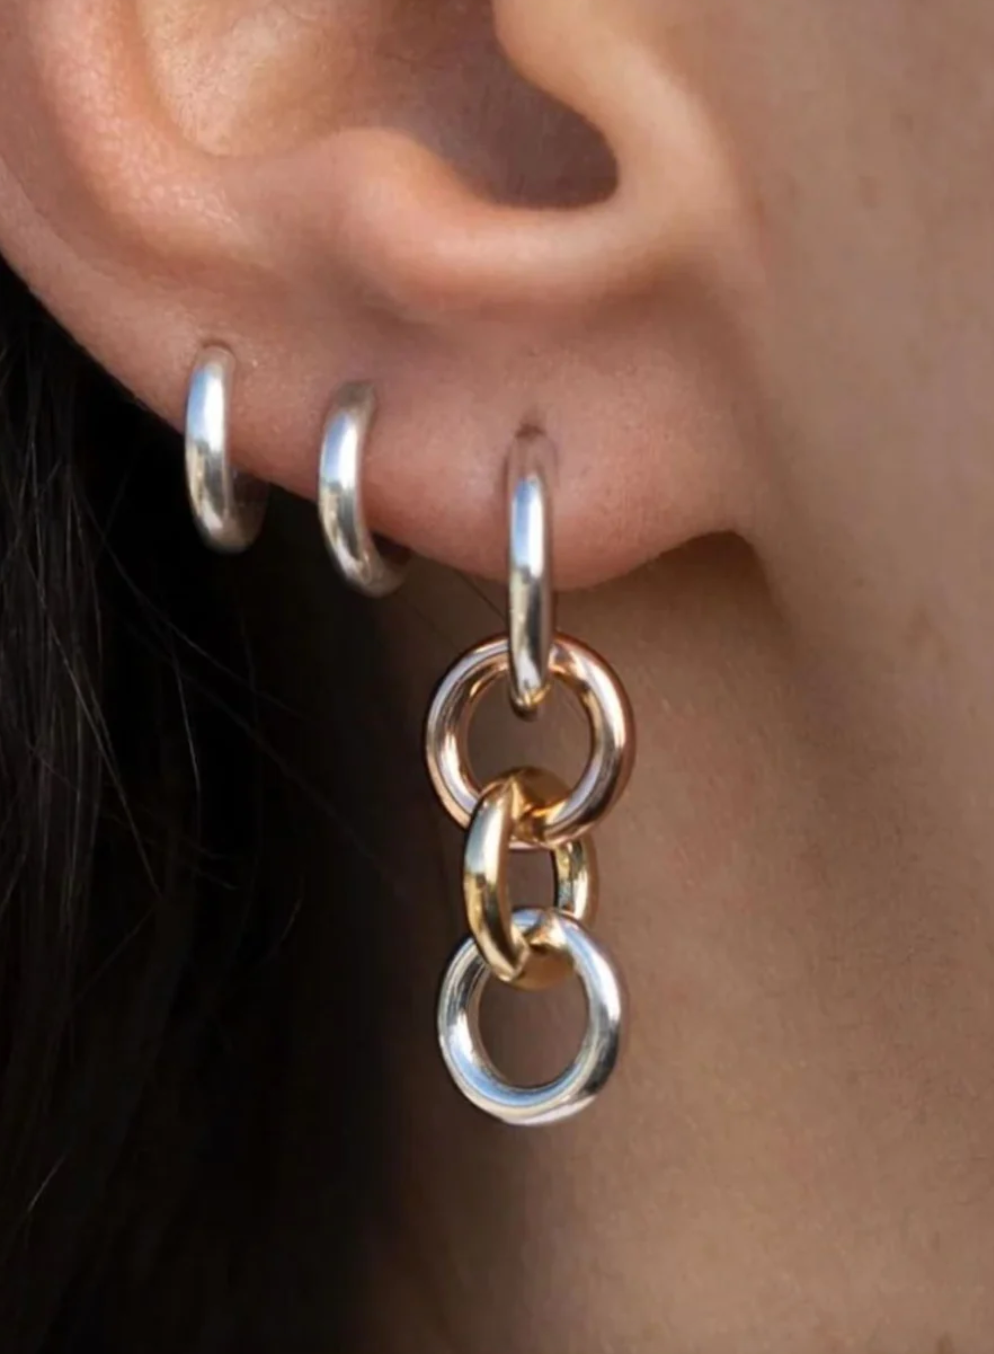 Ariel MX Multi Link Earrings (Pair)